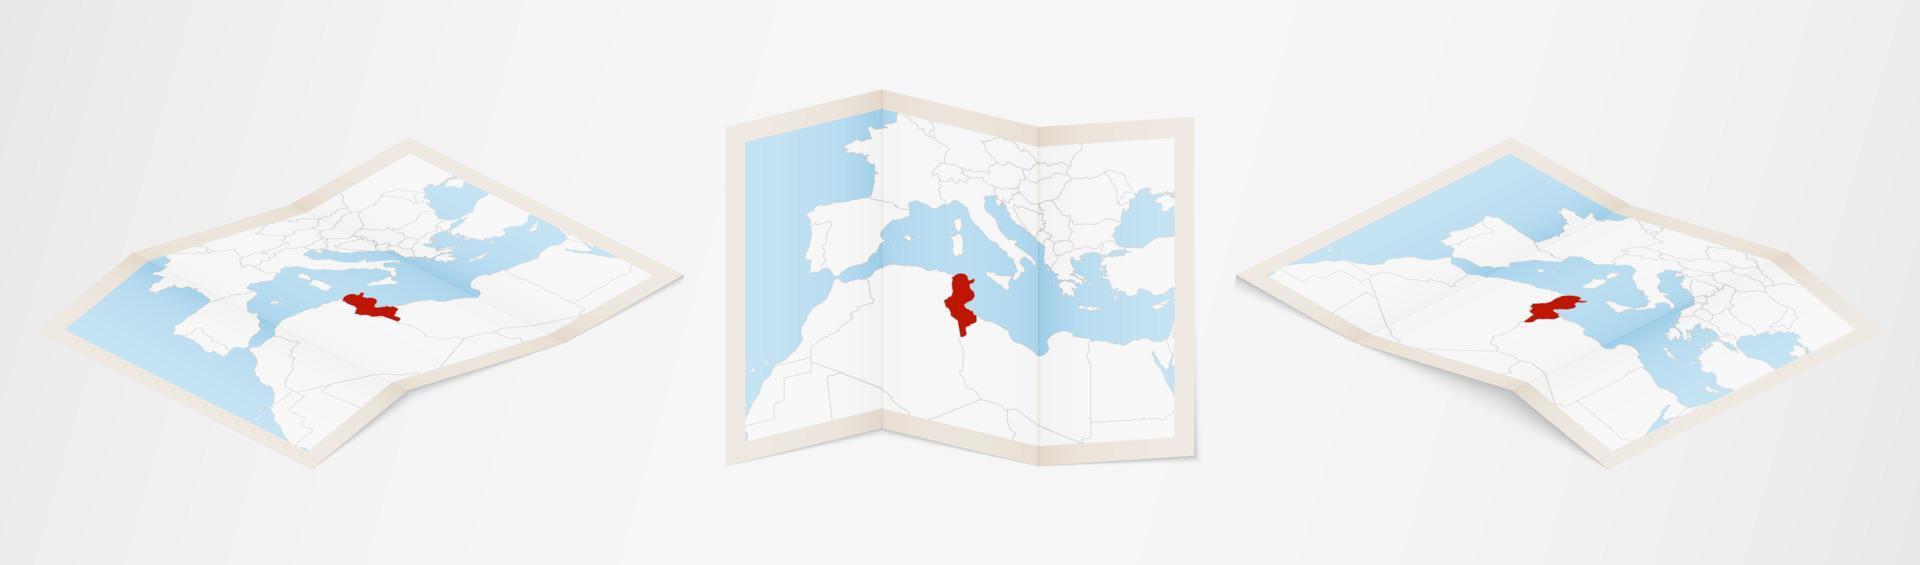 mapa plegado de túnez en tres versiones diferentes. vector